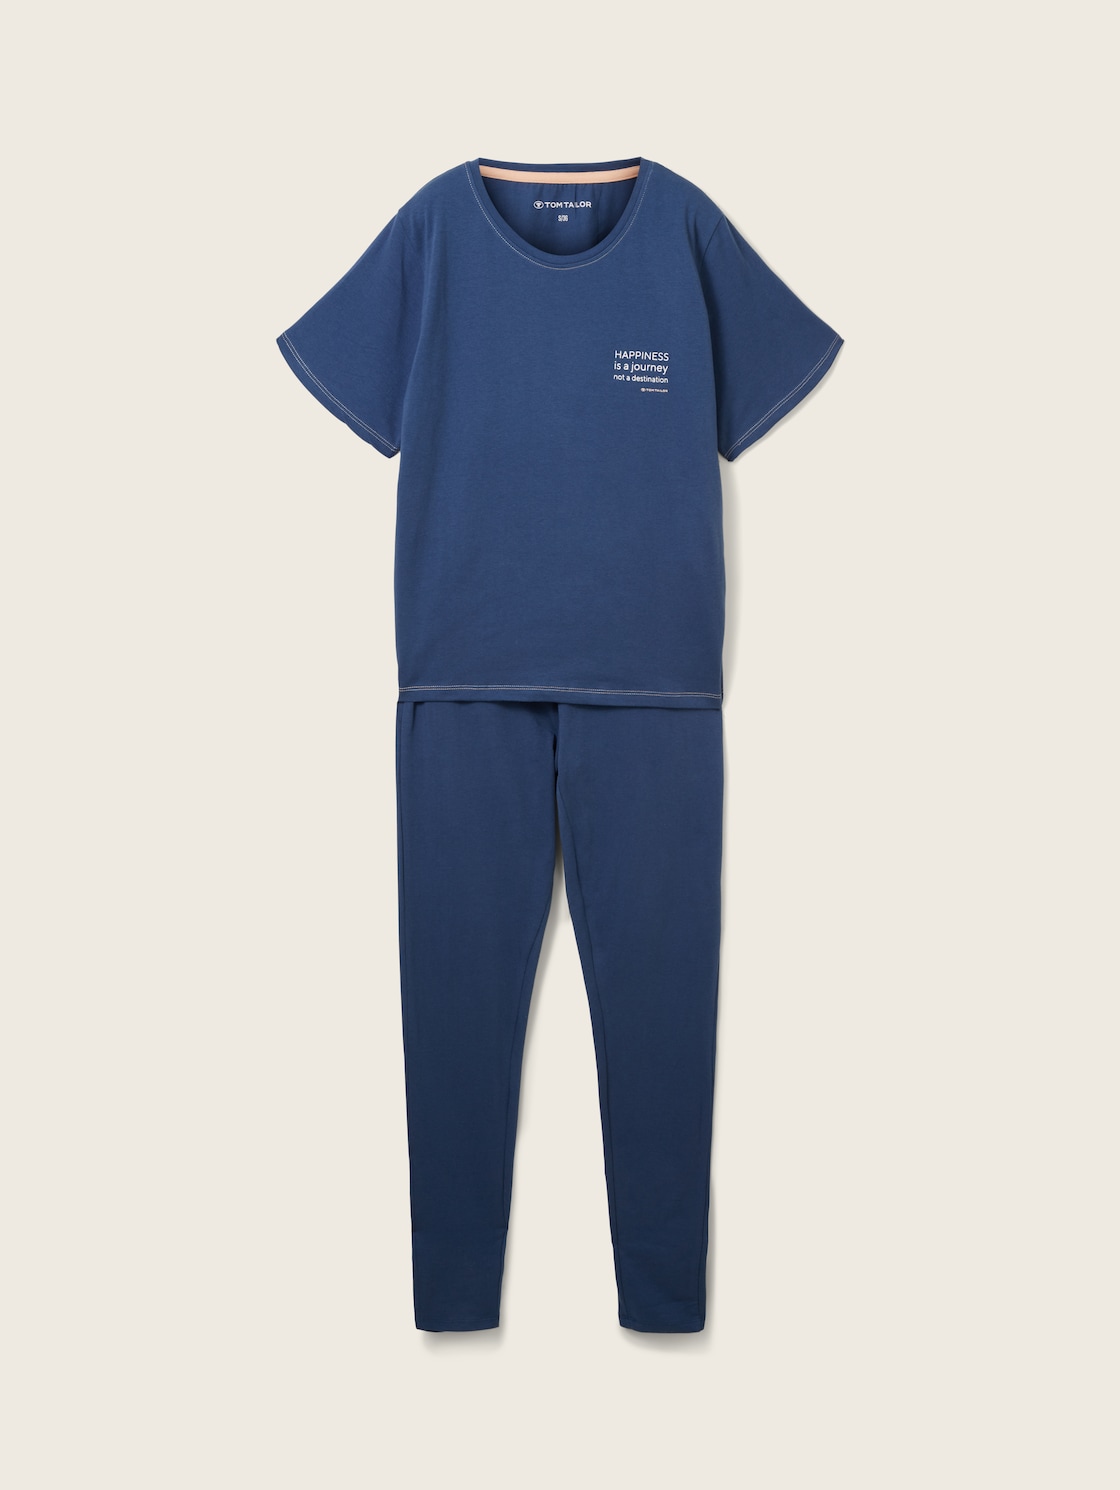 TOM TAILOR Damen Pyjama mit Textprint, blau, Textprint, Gr. XL/42 von Tom Tailor